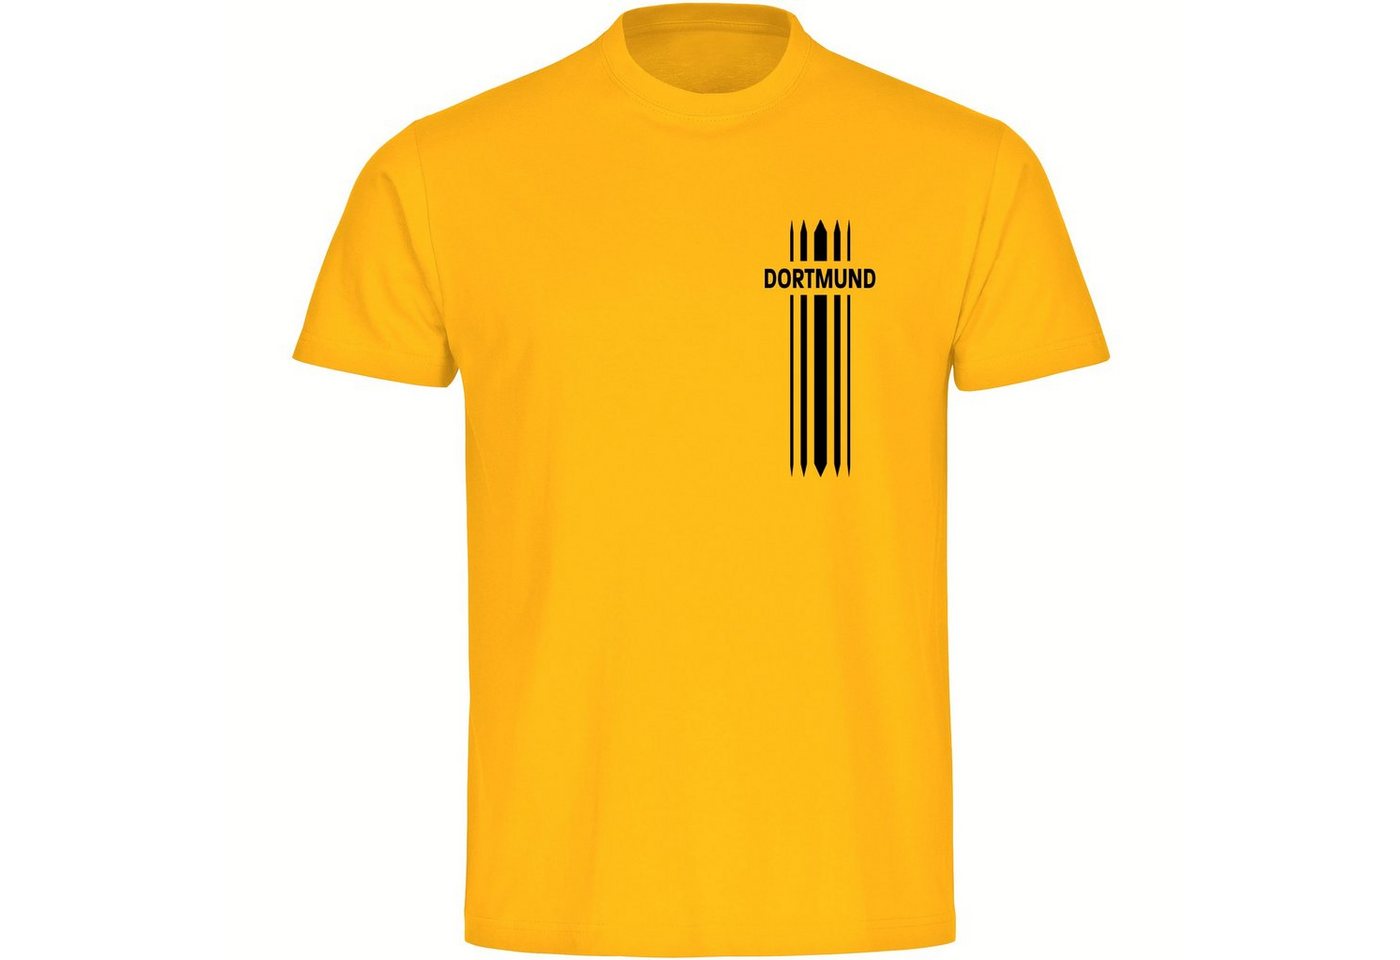 multifanshop T-Shirt Kinder Dortmund - Streifen - Boy Girl von multifanshop